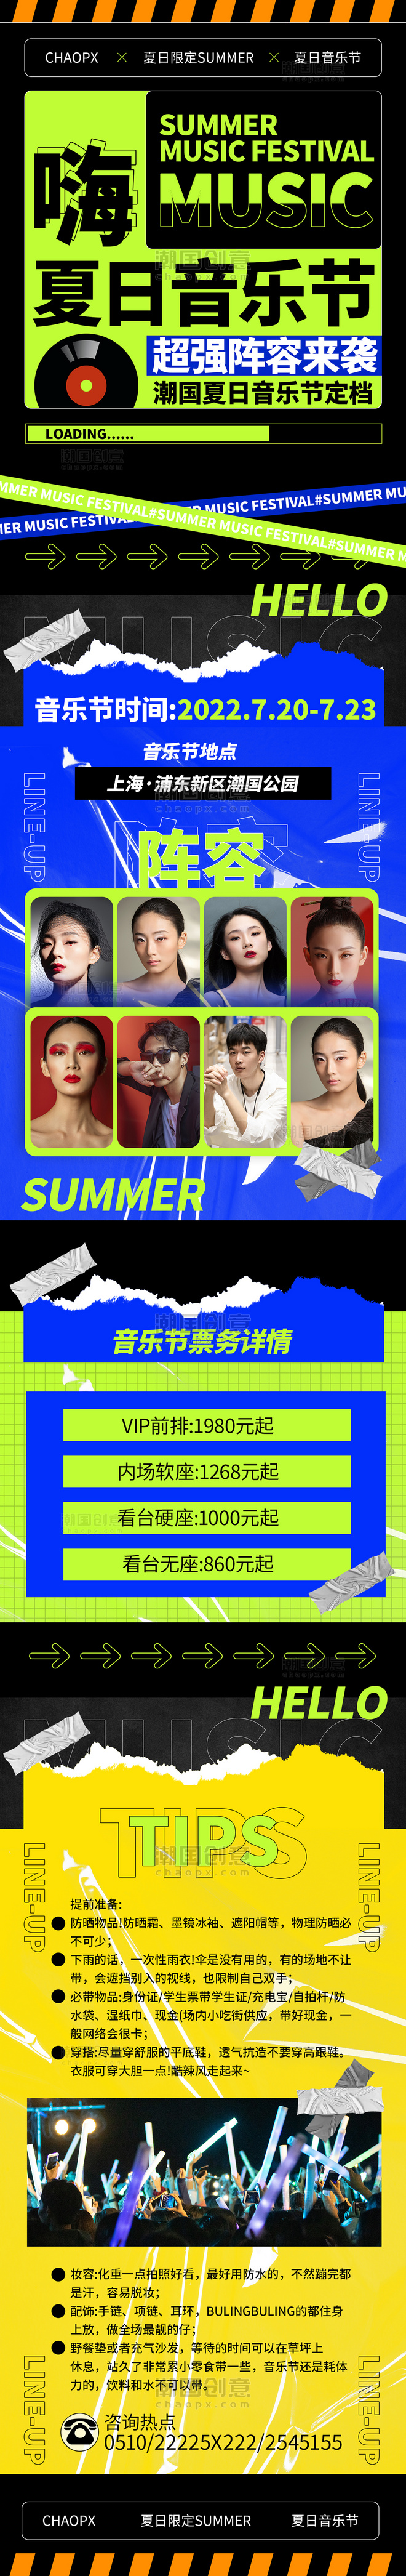 夏日音乐节活动夏天艺术活动宣传H5长图海报